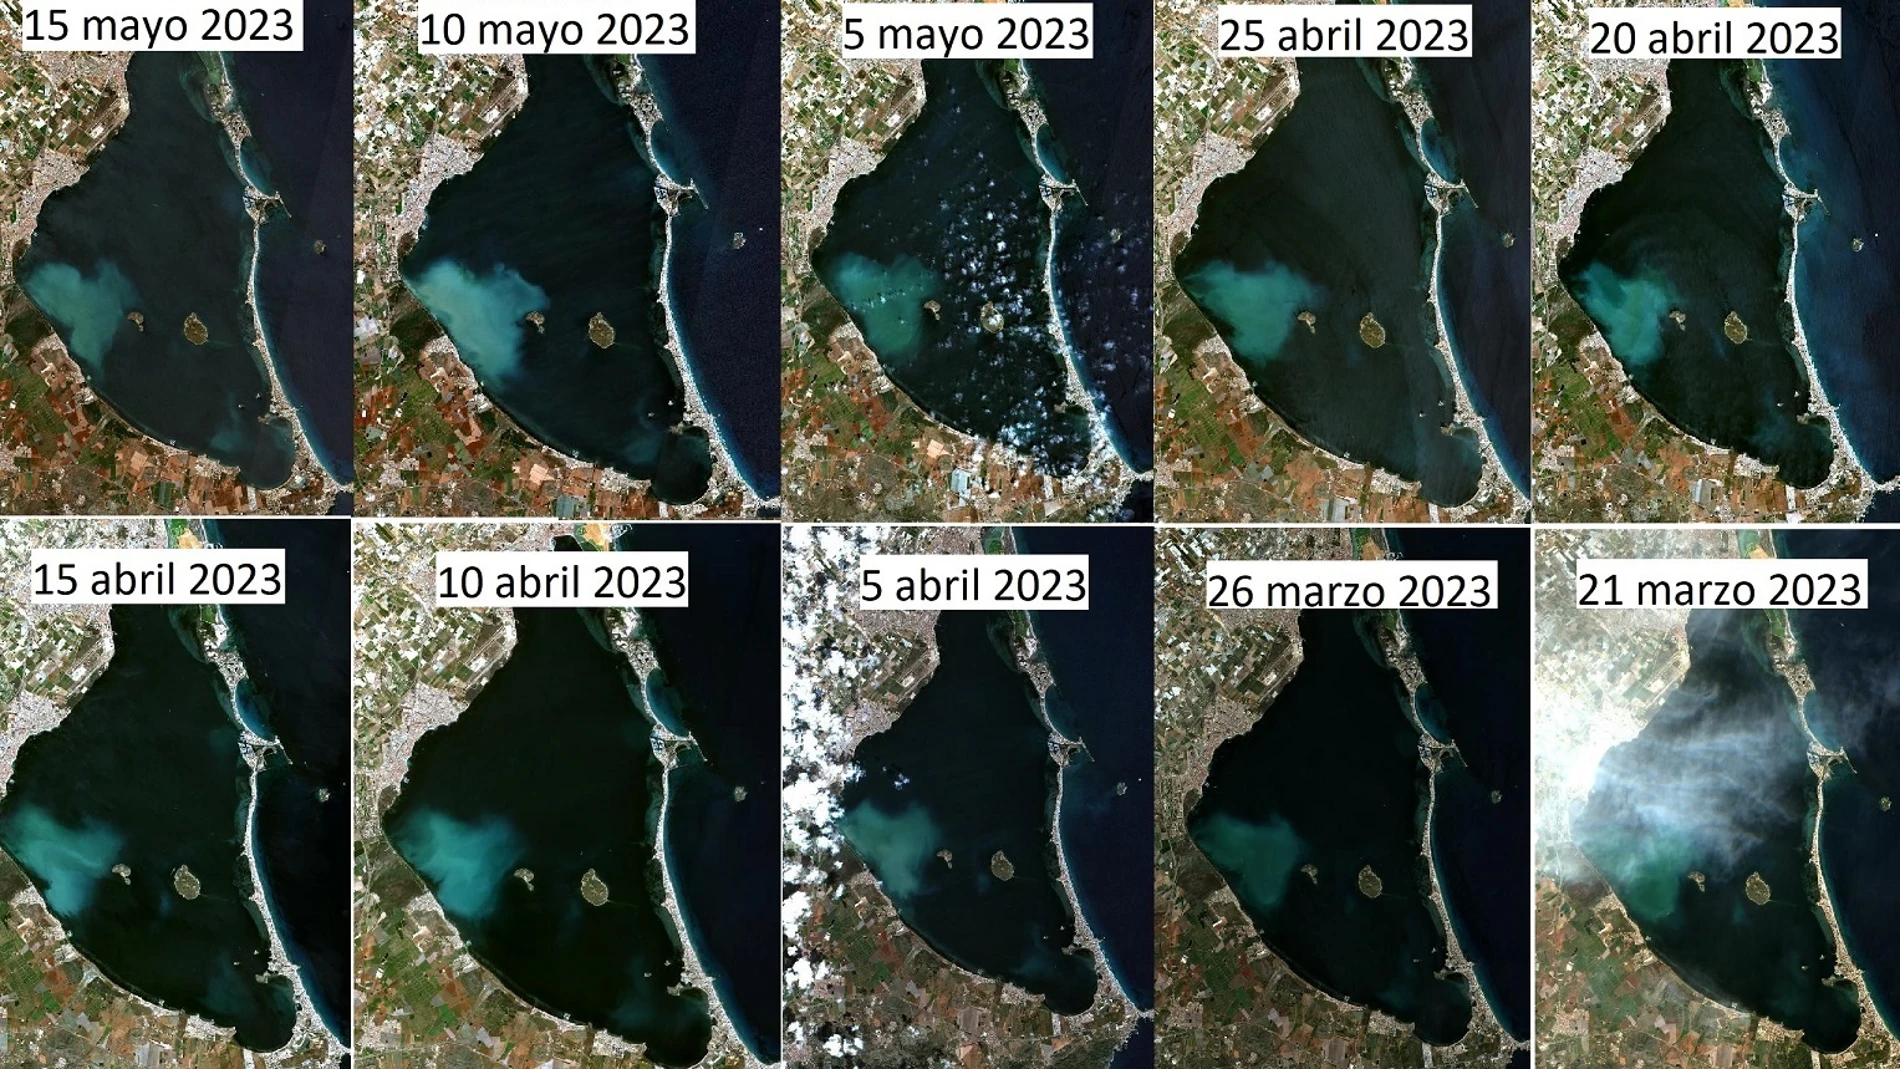 El IEO-CSIC evalúa una masa de agua blanquecina observada en el Mar Menor